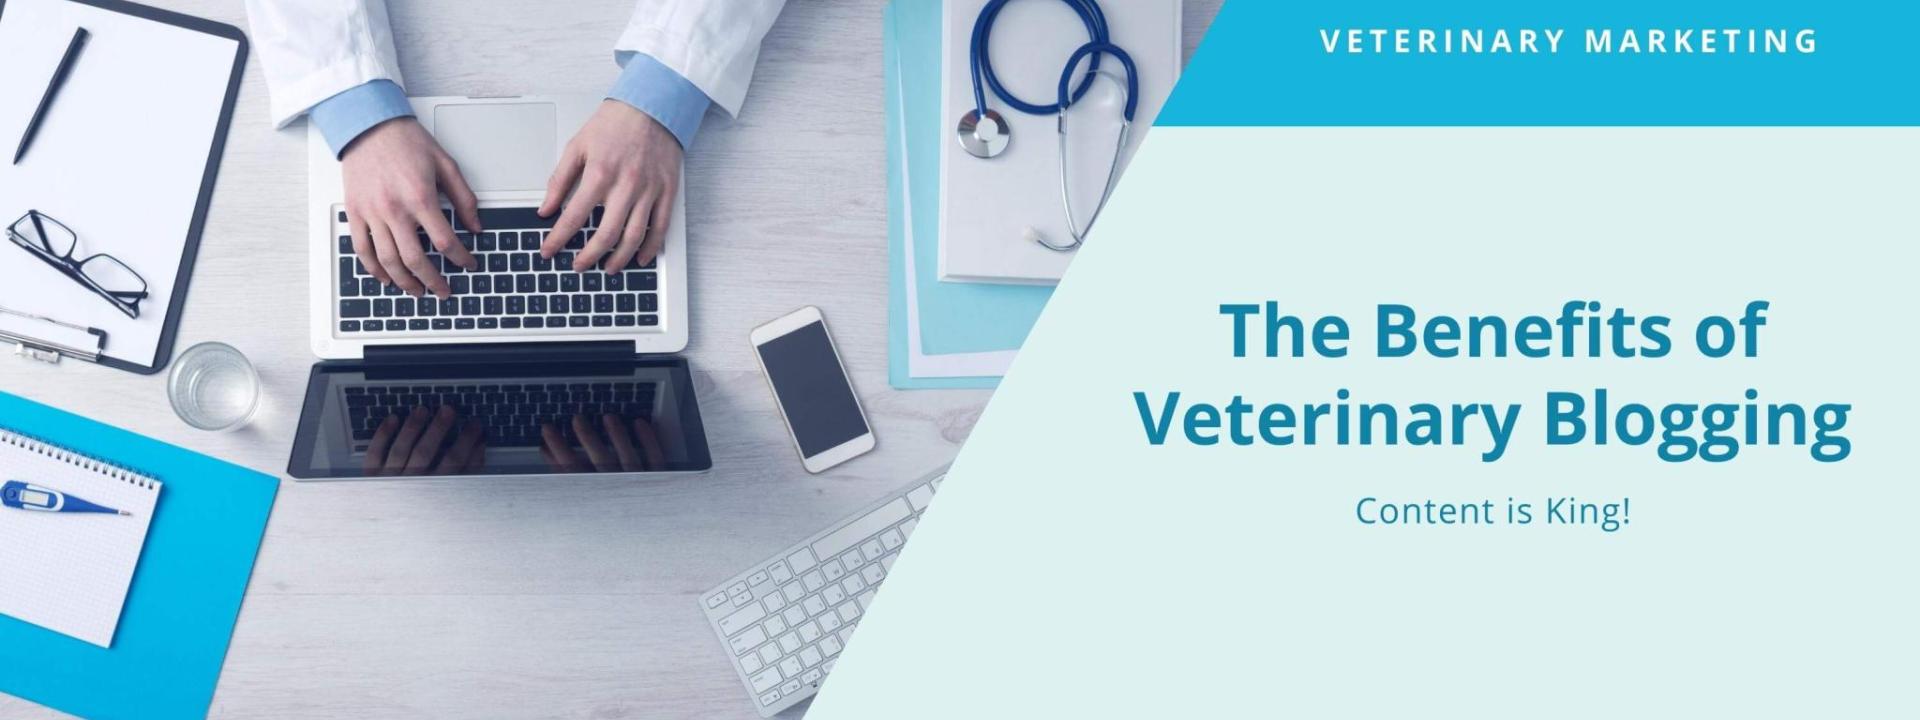 Benefits of Blogging for Veterinarians